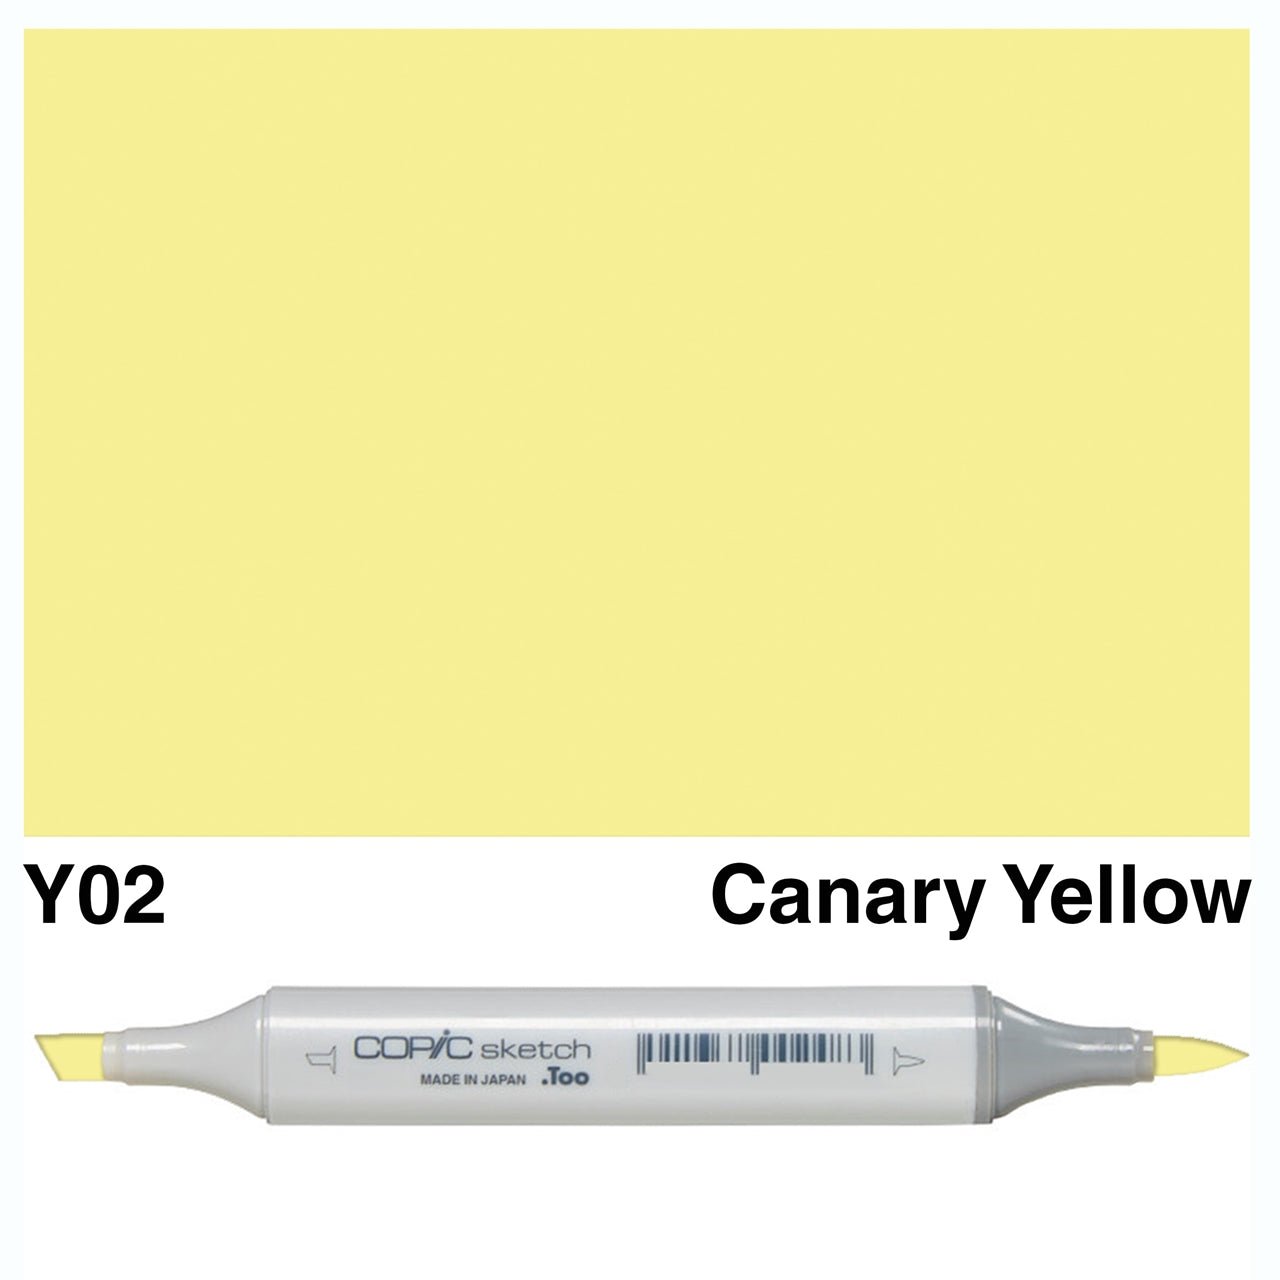 Copic Sketch Y02 Canary Yellow - theartshop.com.au